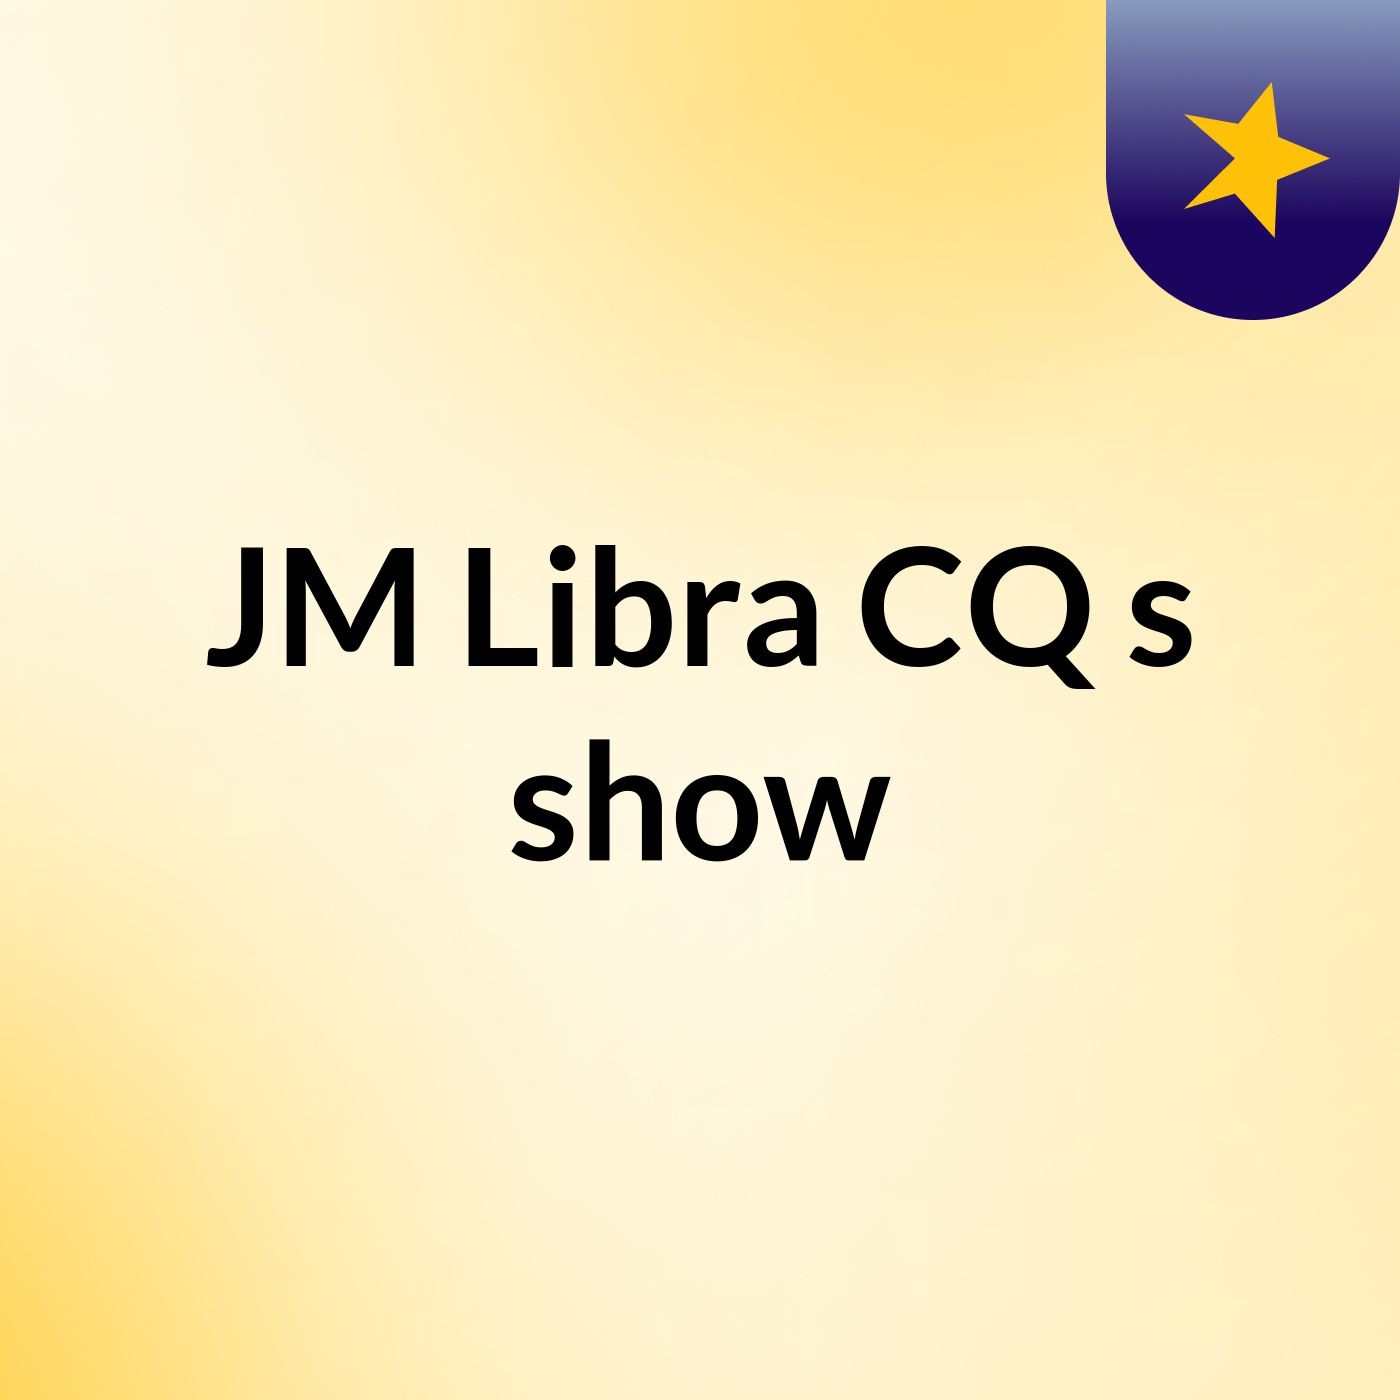 JM Libra CQ's show